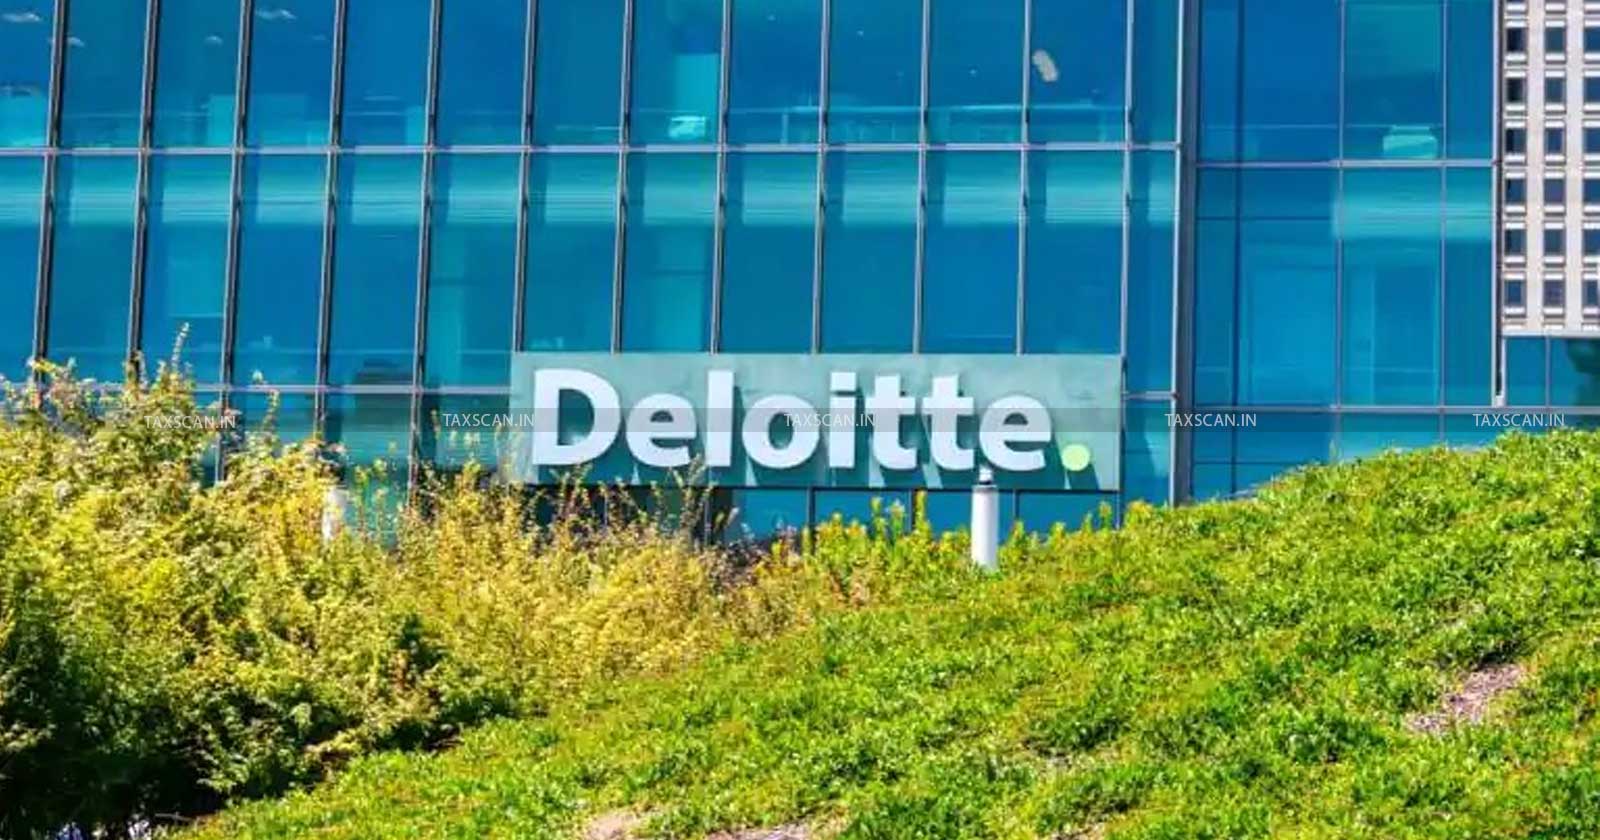 CA Vacancy in Deloitte - Vacancy in Deloitte - CA Hiring in Deloitte - Hiring in Deloitte - taxscan